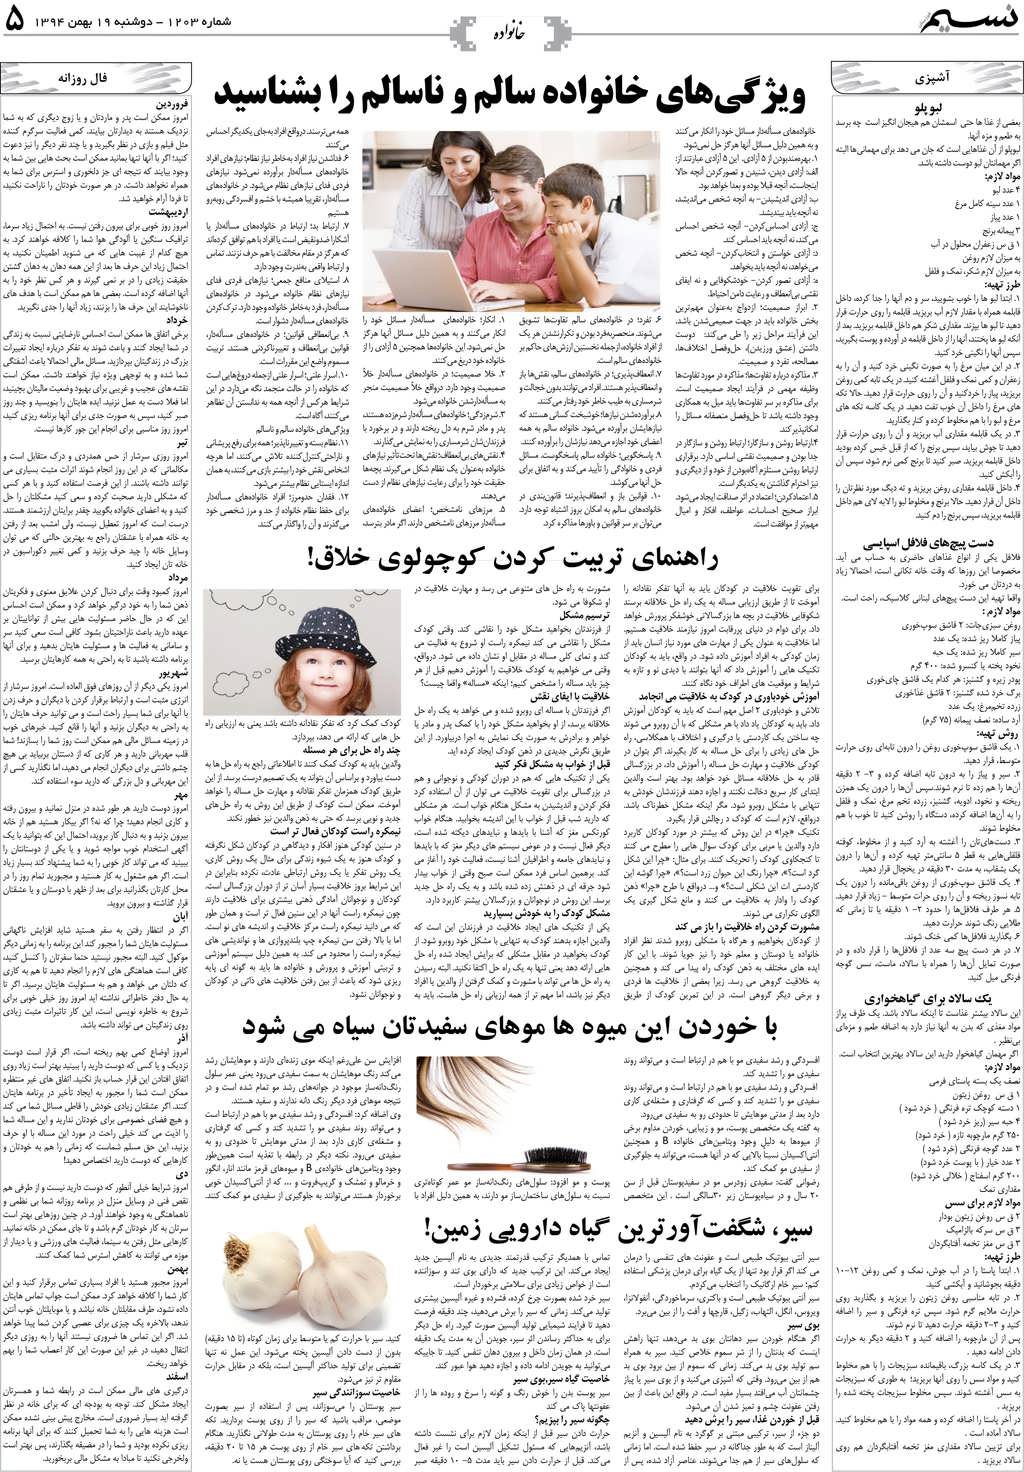 صفحه خانواده روزنامه نسیم شماره 1203